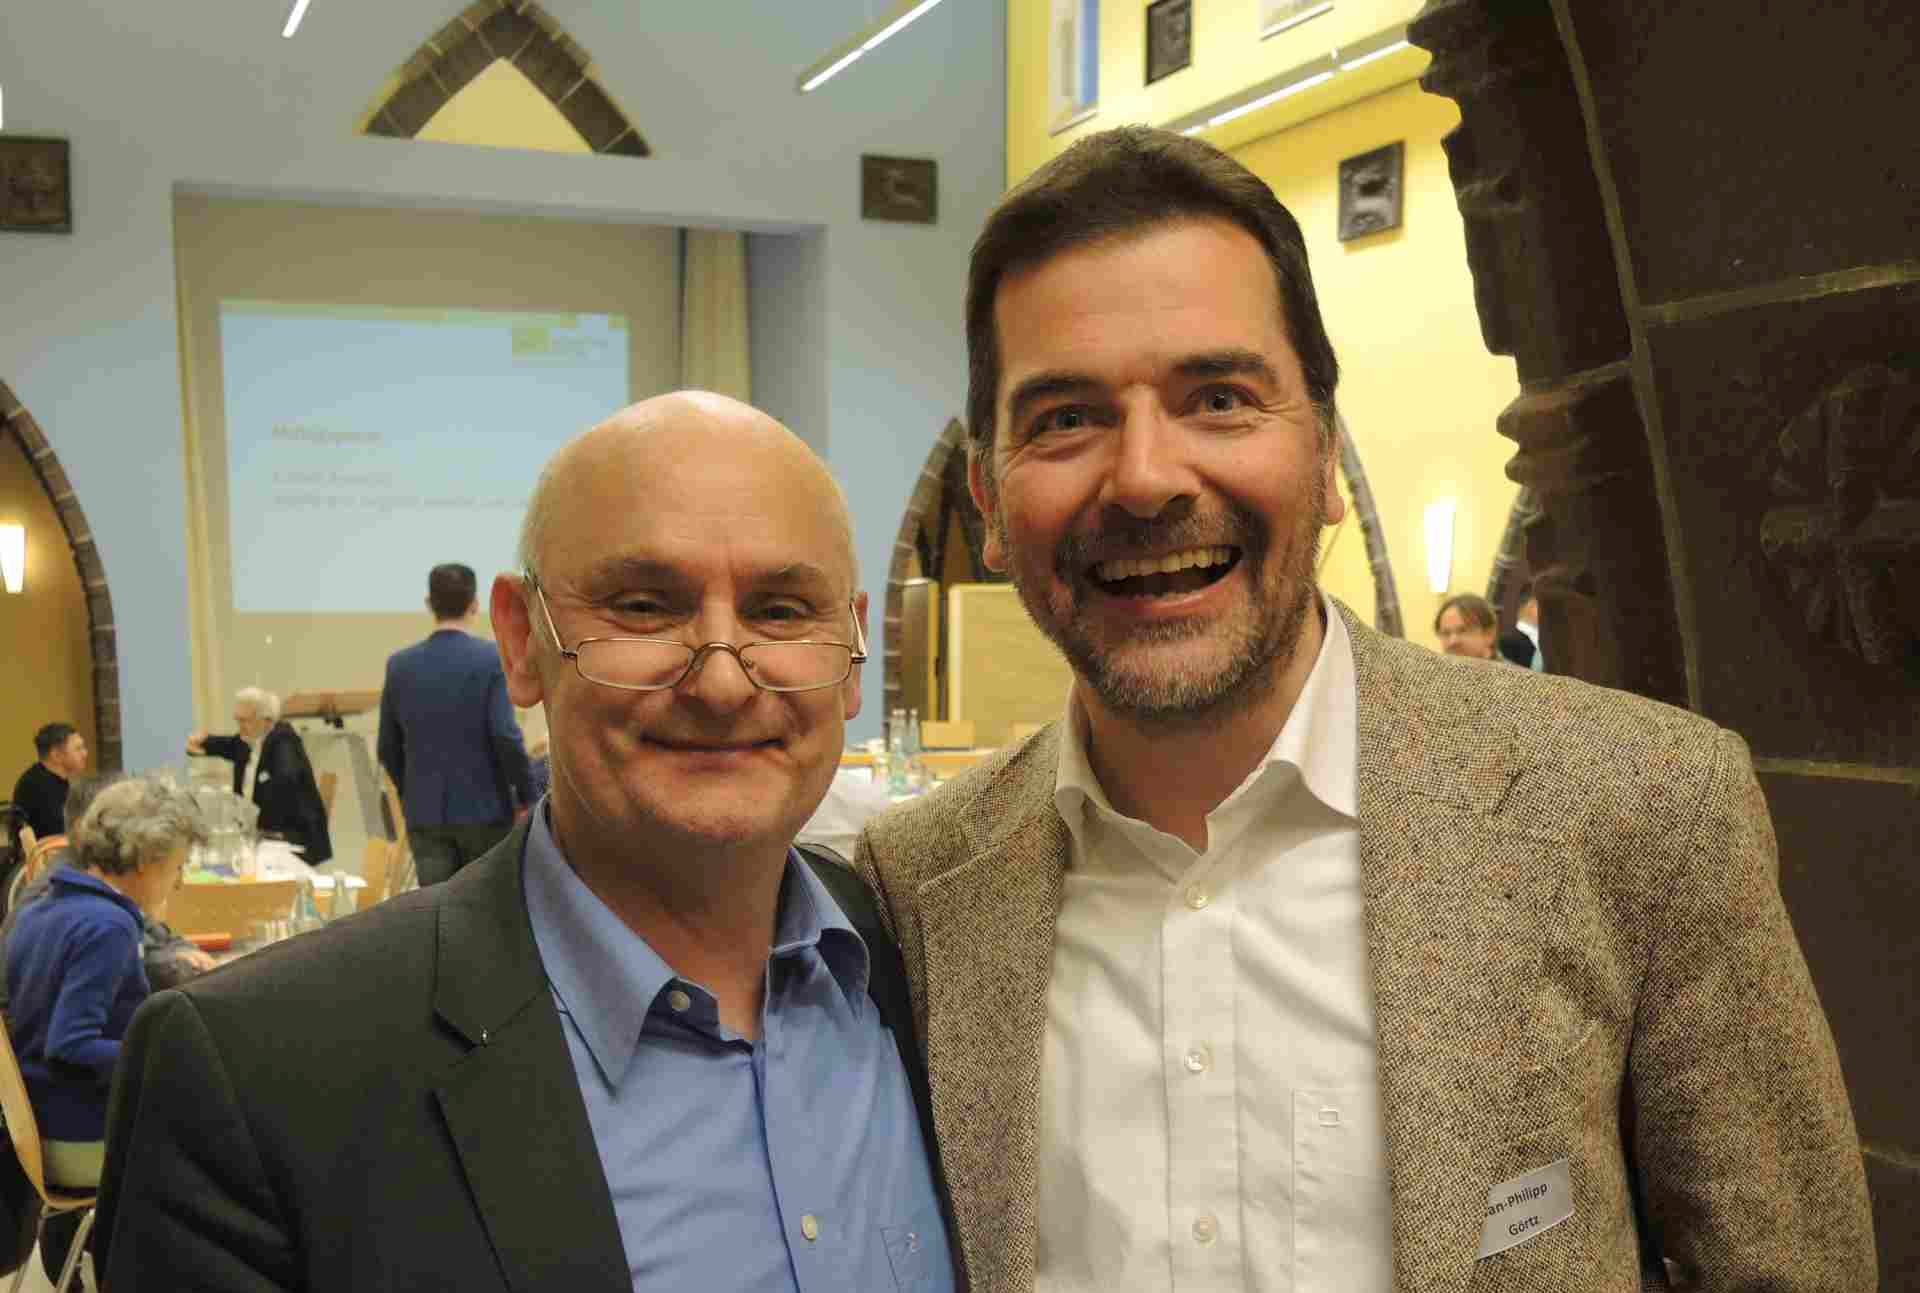 DG-Vorstandsmitglieder Norman Gebauer und Jan-Philipp Görtz vertreten die Interessen der BKU-Mitglieder im Diözesanrat der Katholiken